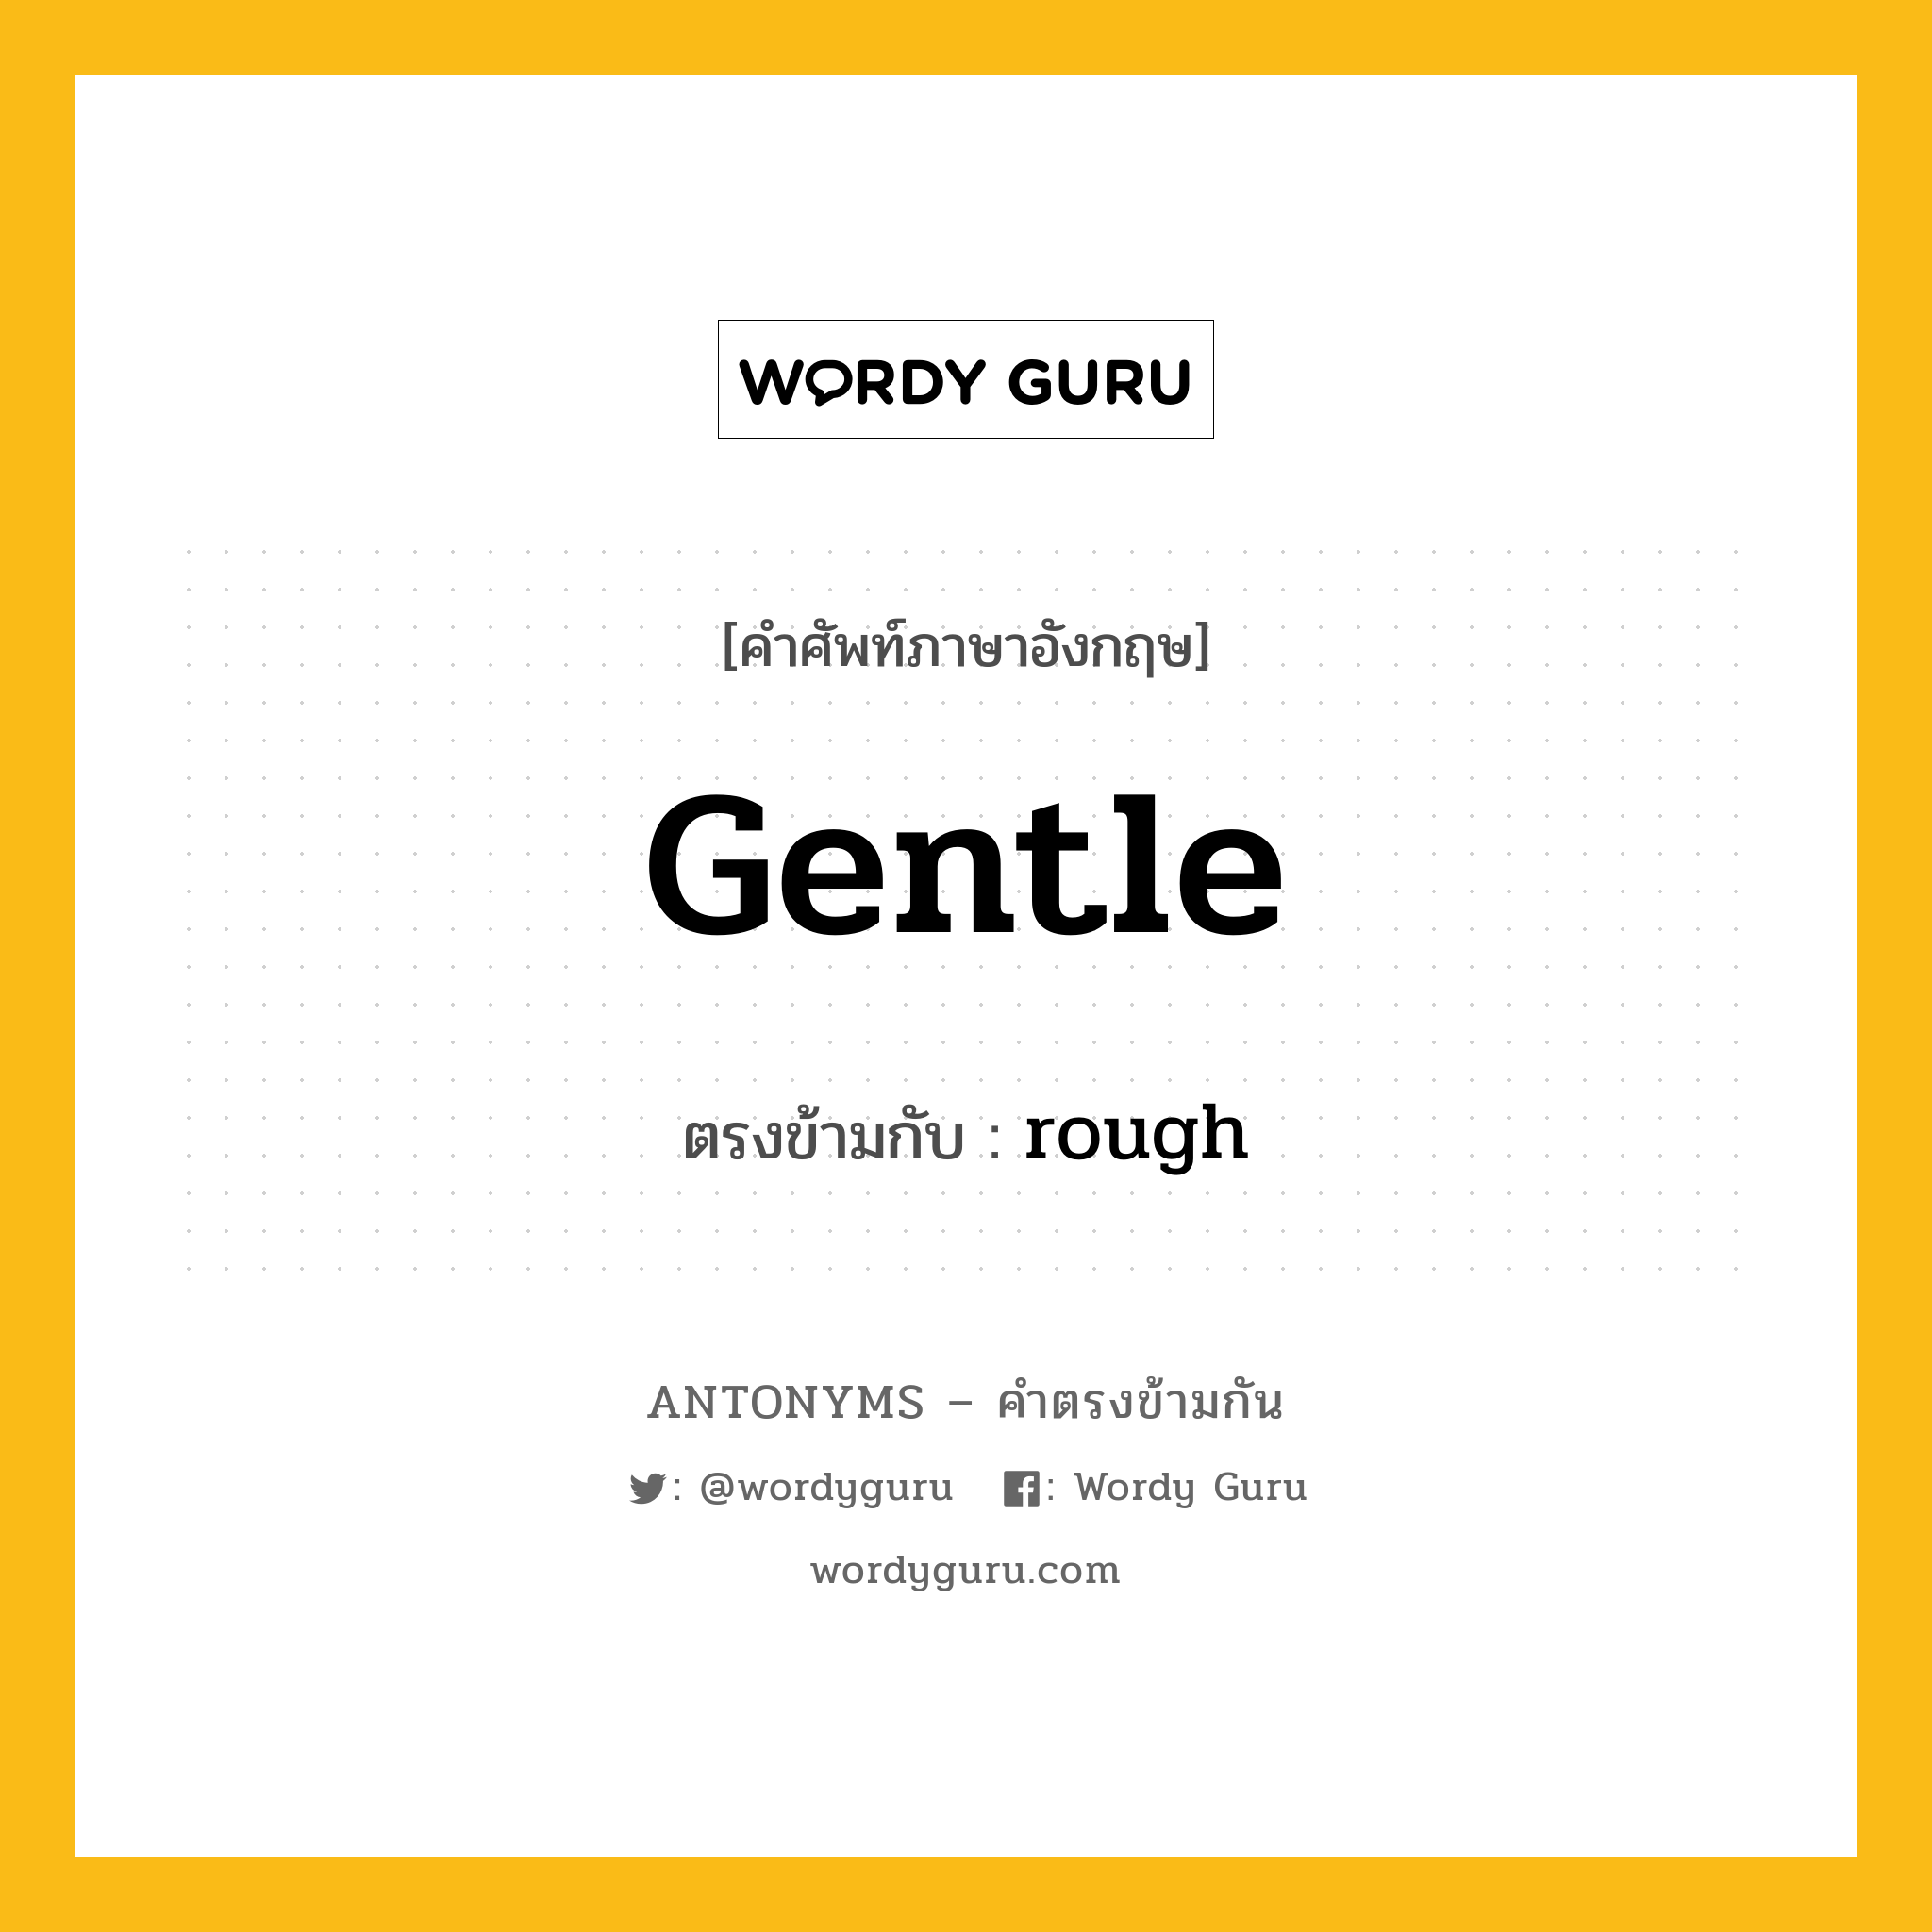 gentle เป็นคำตรงข้ามกับคำไหนบ้าง?, คำศัพท์ภาษาอังกฤษ gentle ตรงข้ามกับ rough หมวด rough